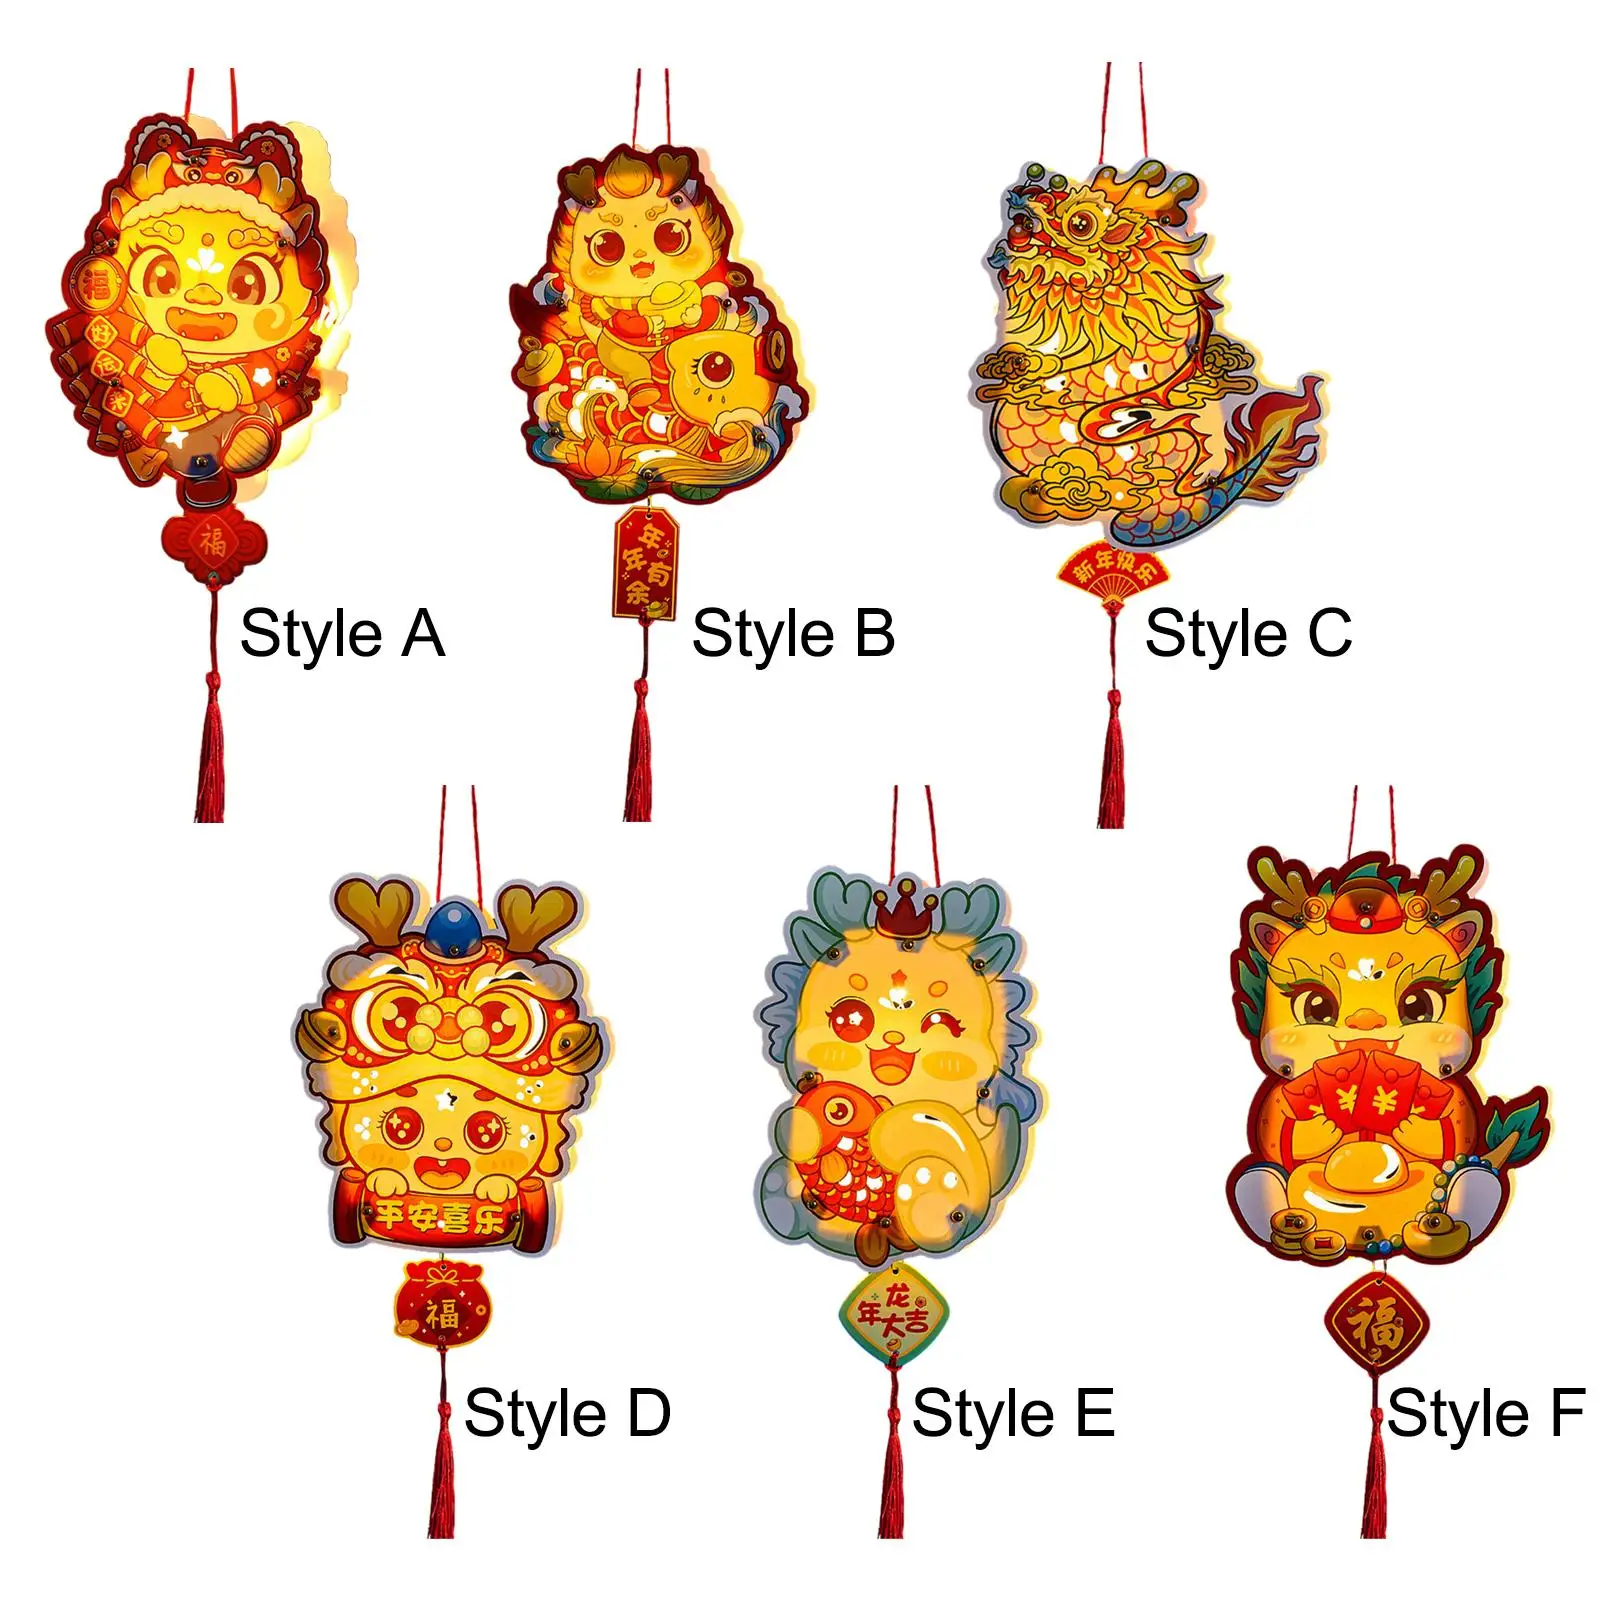 O Ano Novo chinês Lanterna de Artesanato dos desenhos animados de Suprimentos Prop Festival da Primavera Lanterna DIY para a Casa de Festa do Feriado do Ano Novo Lunar Aniversário